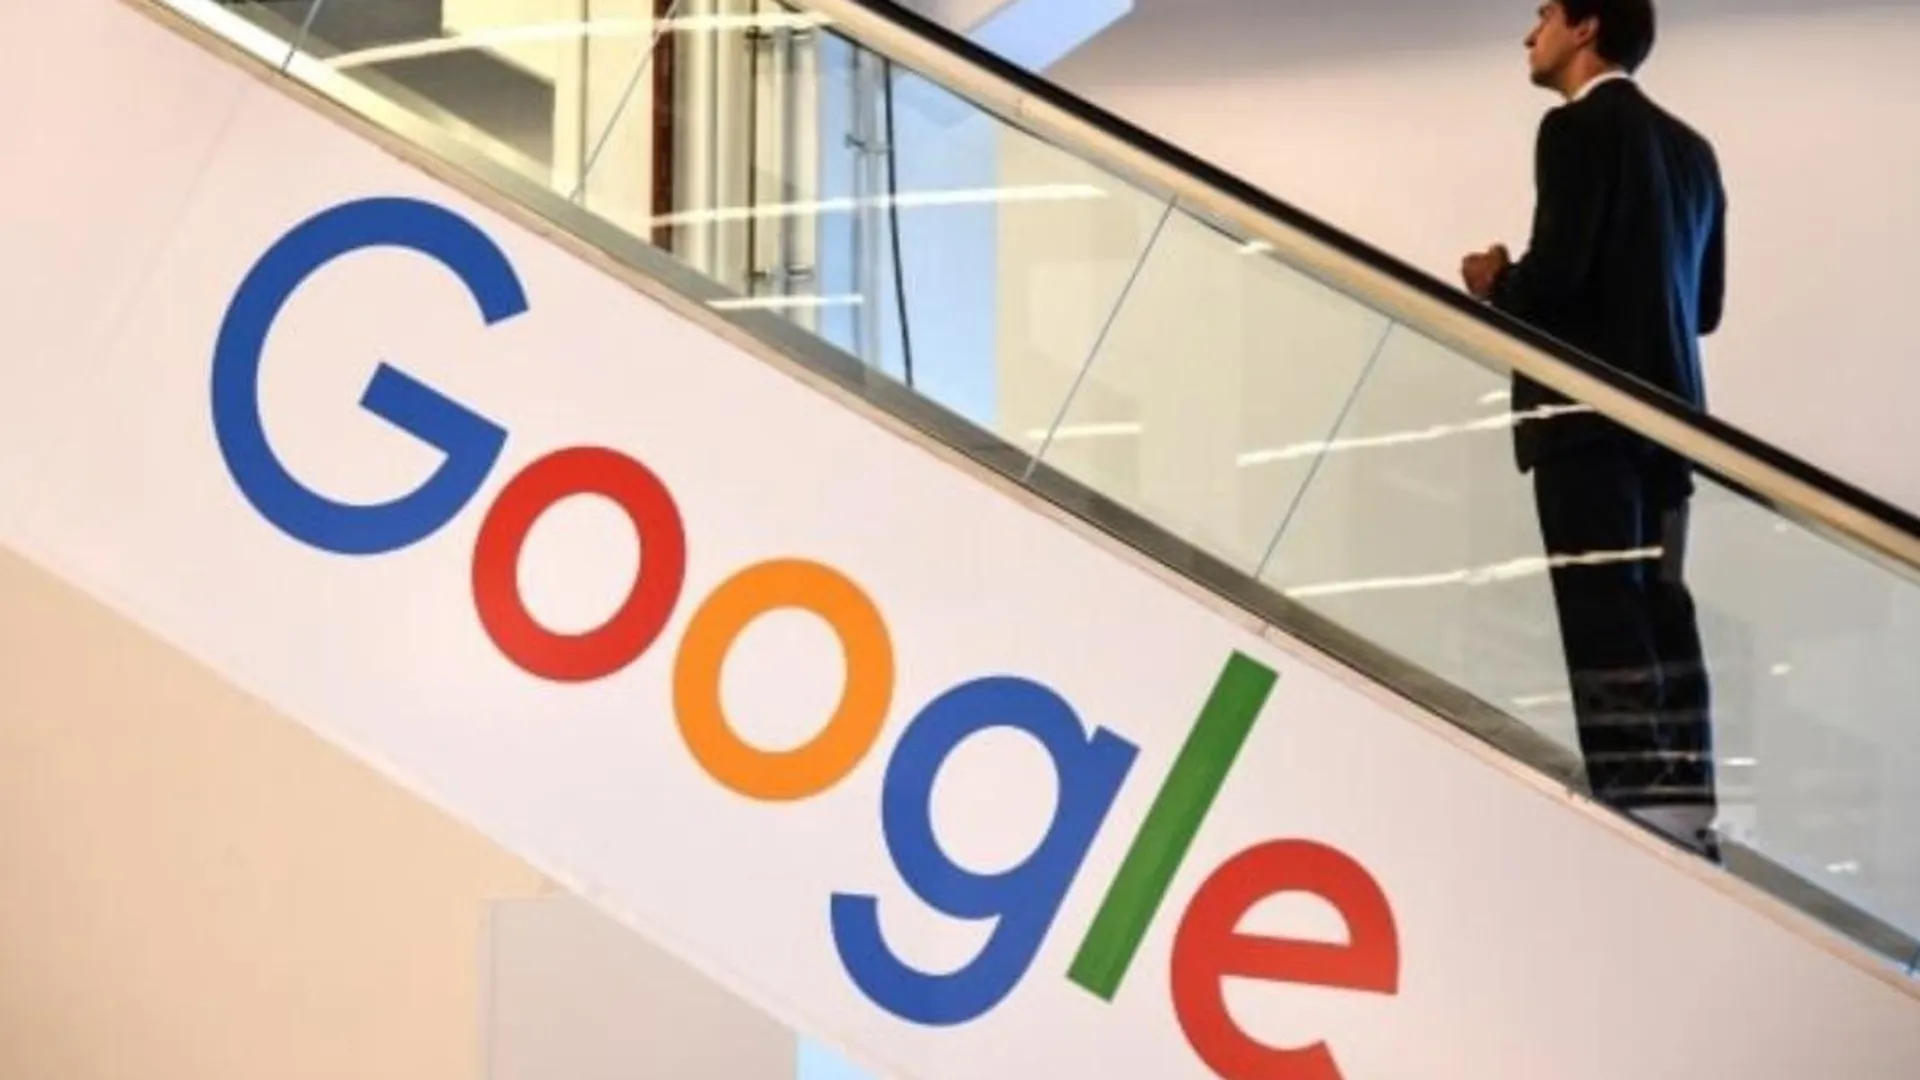 Суд в России обязал Google вернуть 2ГИС обратно в свой магазин